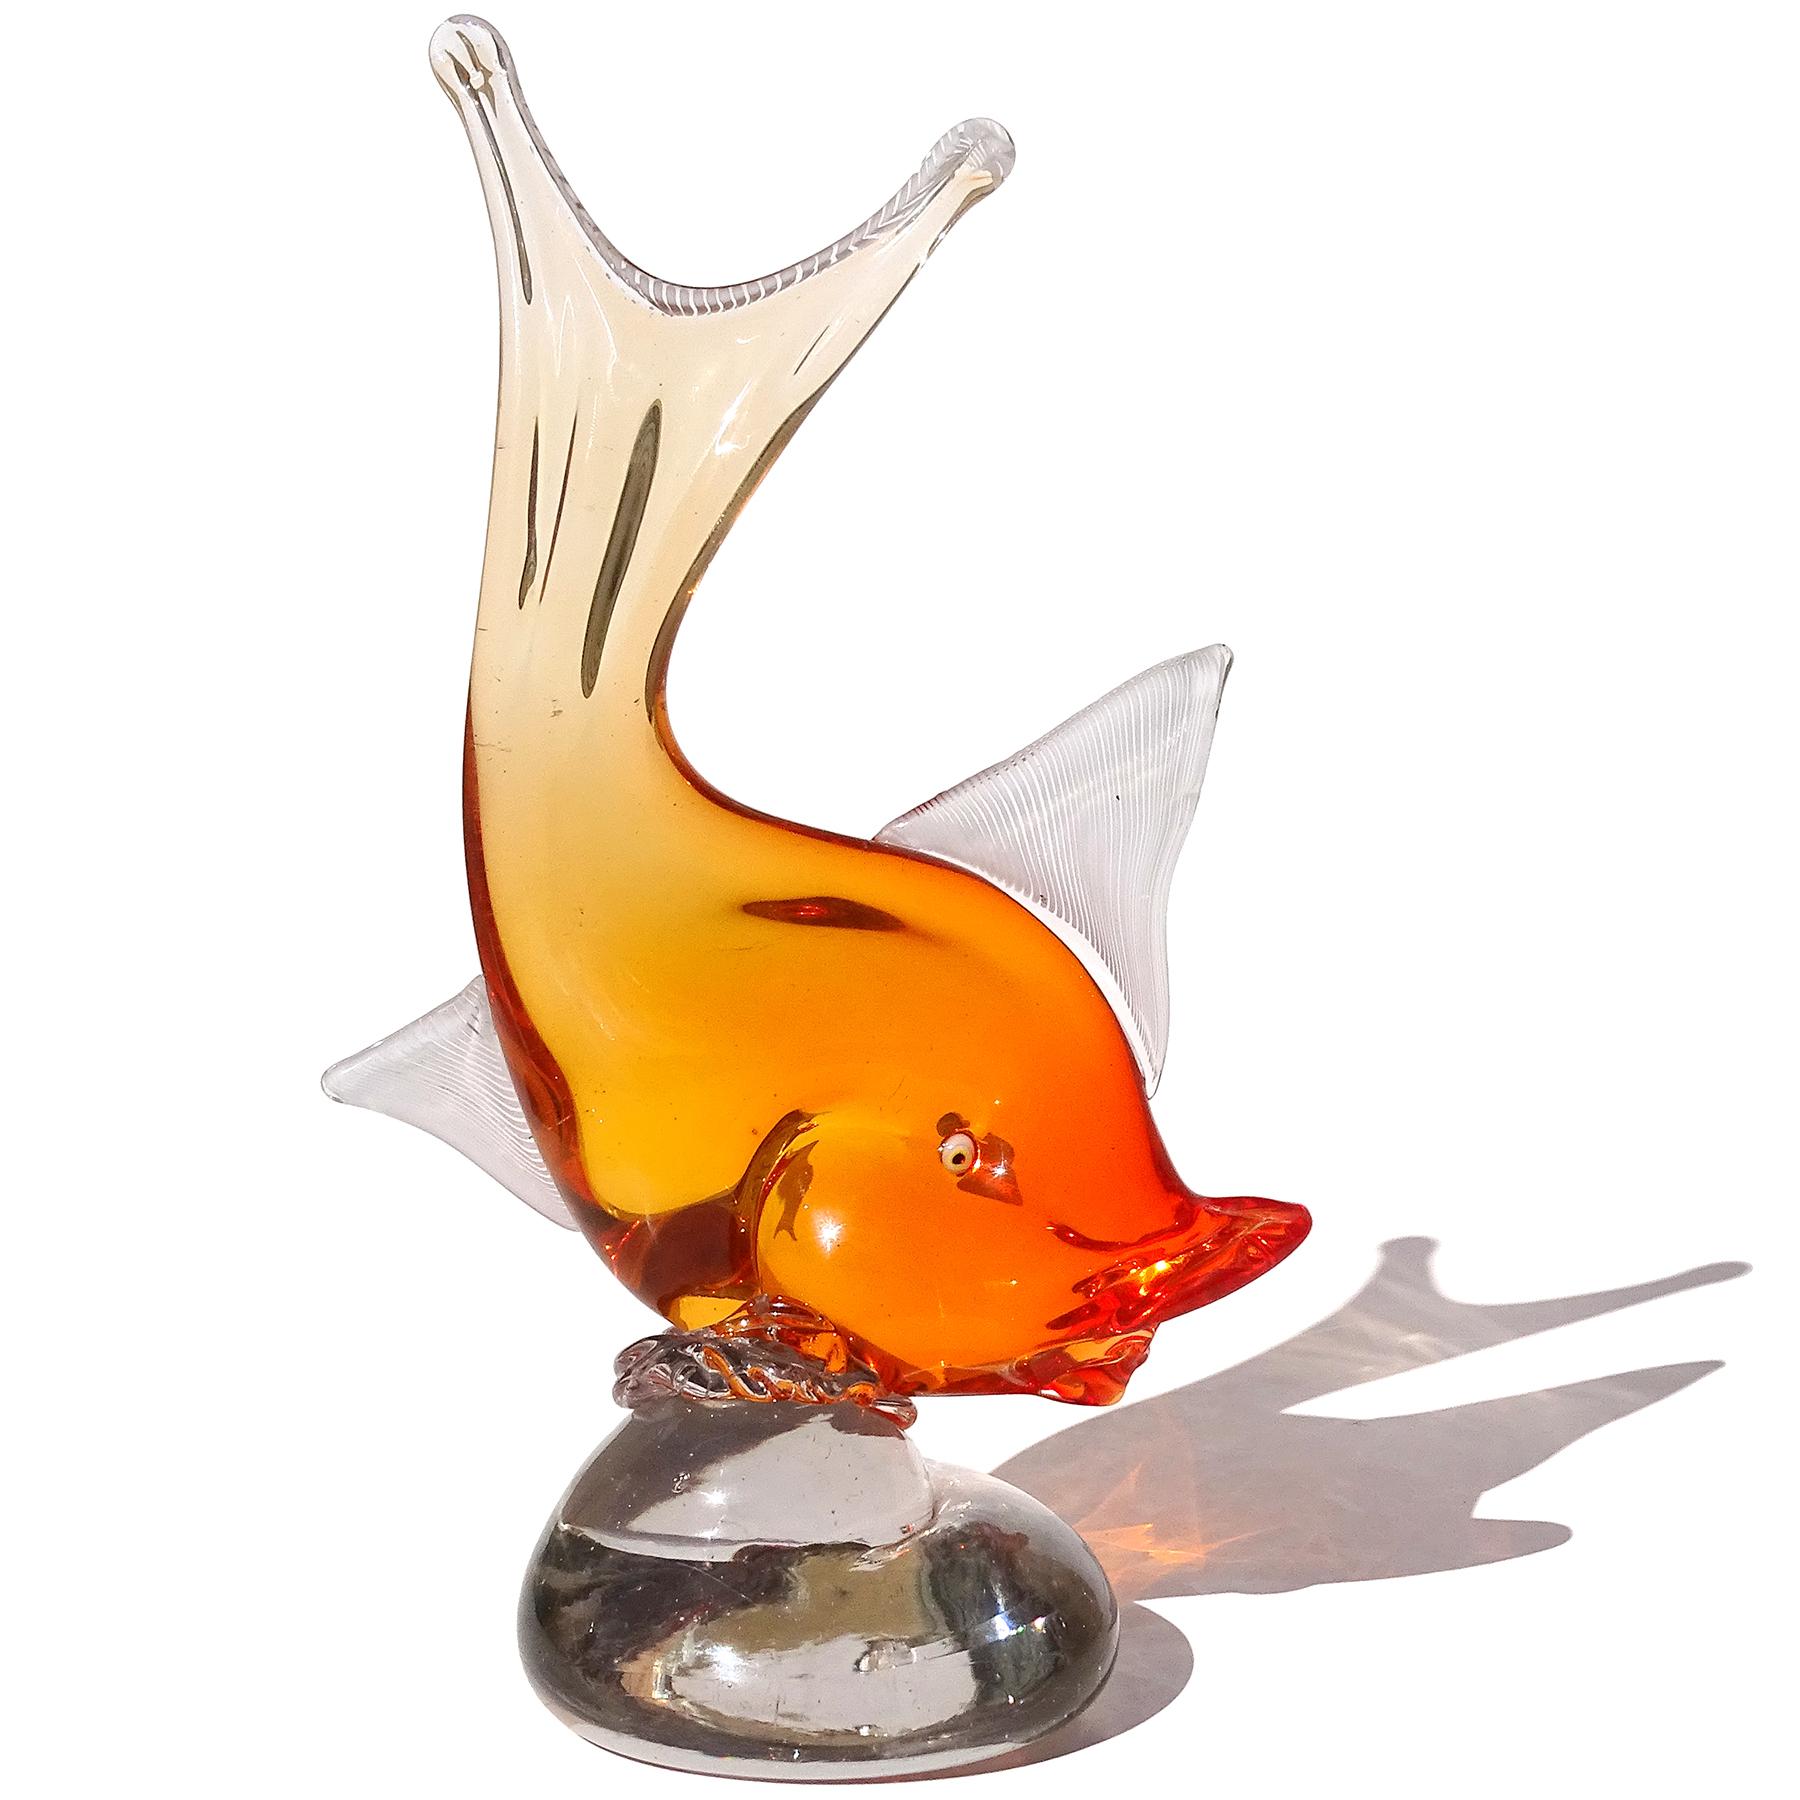 Magnifique sculpture vintage en verre d'art italien soufflé à la main Sommerso orange vif, poisson sur socle. Documenté au designer Dino Martens pour Aureliano Toso, vers les années 1950. Publié dans son livre (voir photo), le modèle 6180, et un